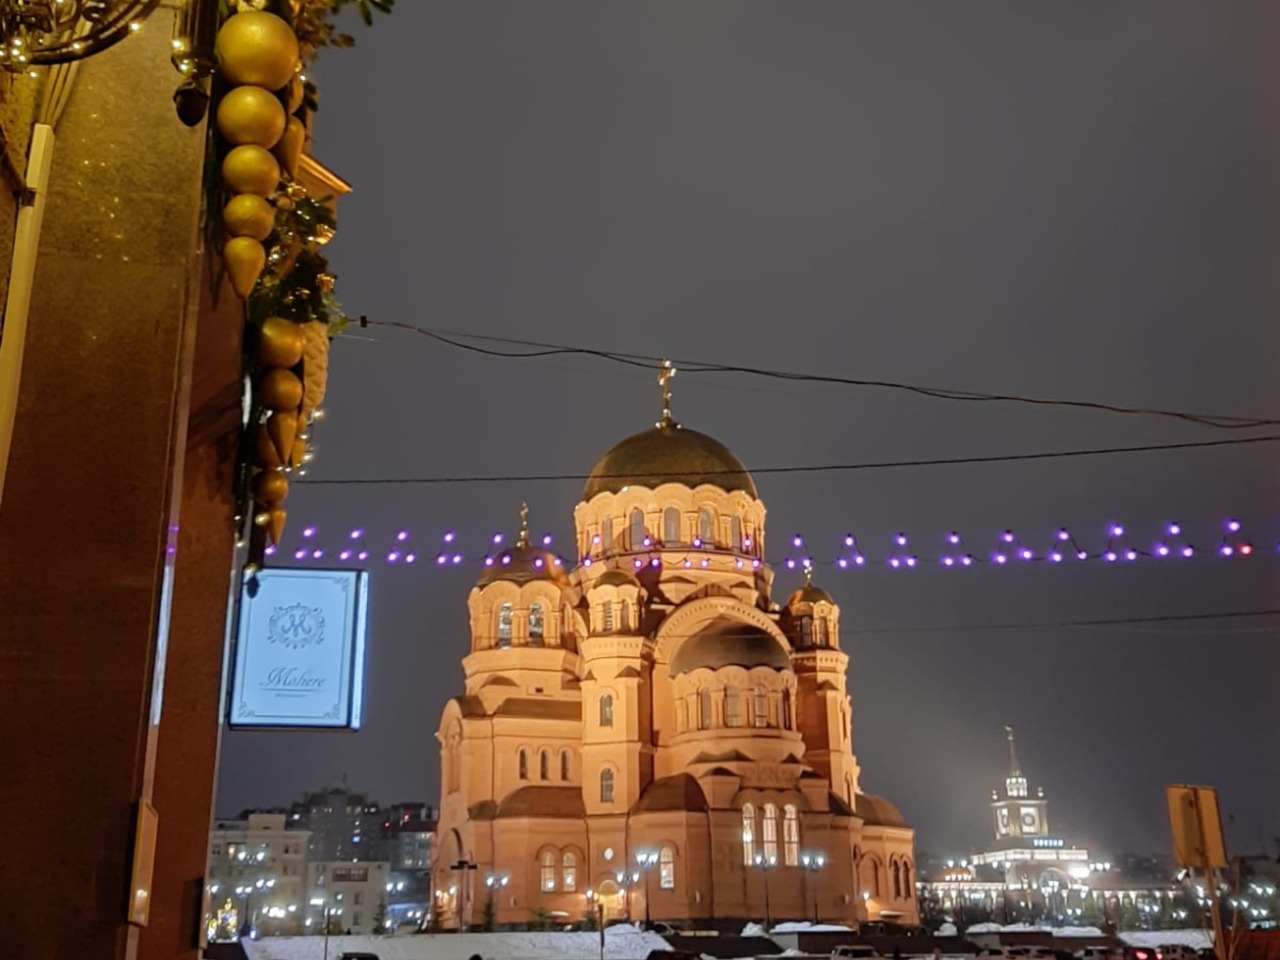 Вечерний Волгоград: огни и монументы | Цена 10000₽, отзывы, описание экскурсии